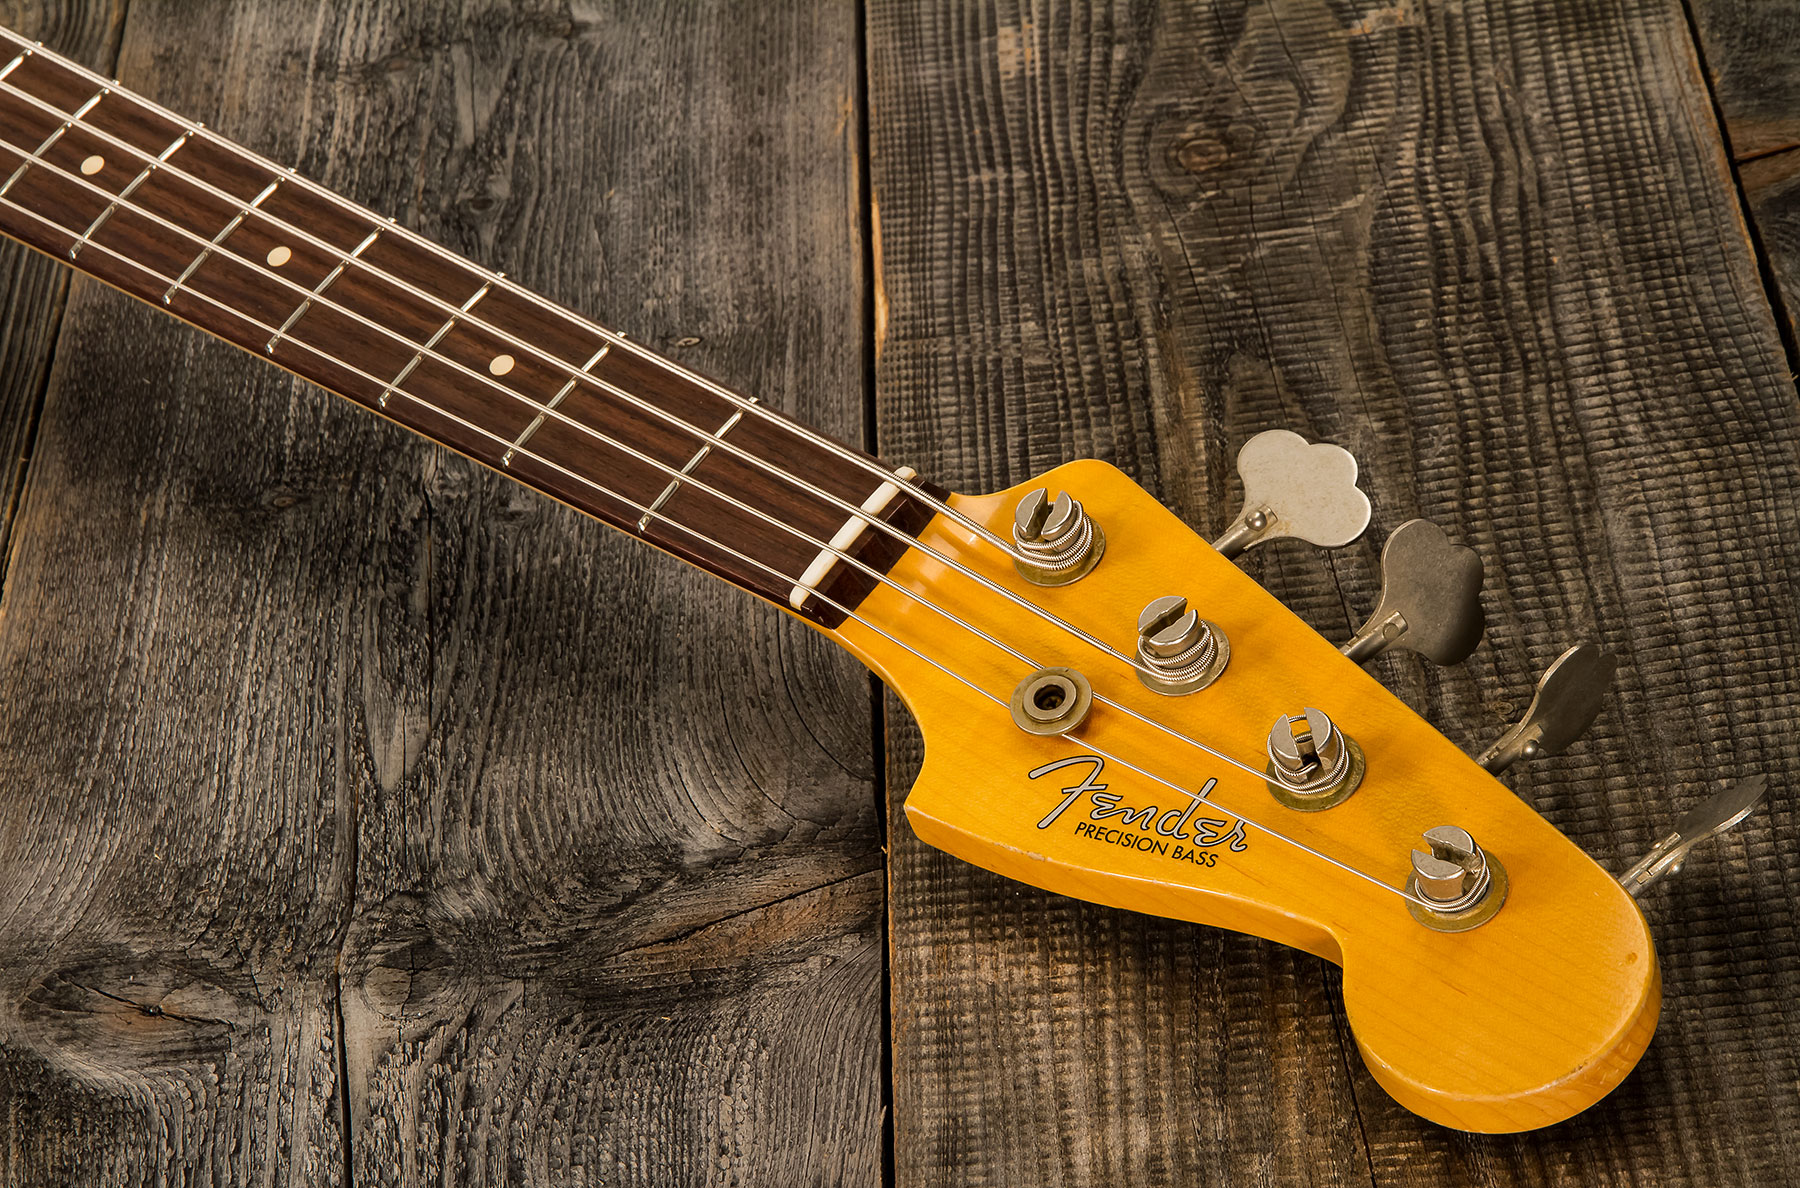 Fender Custom Shop Precision Bass 1961 Rw #cz556533 - Relic 3-color Sunburst - Solidbody E-bass - Variation 5